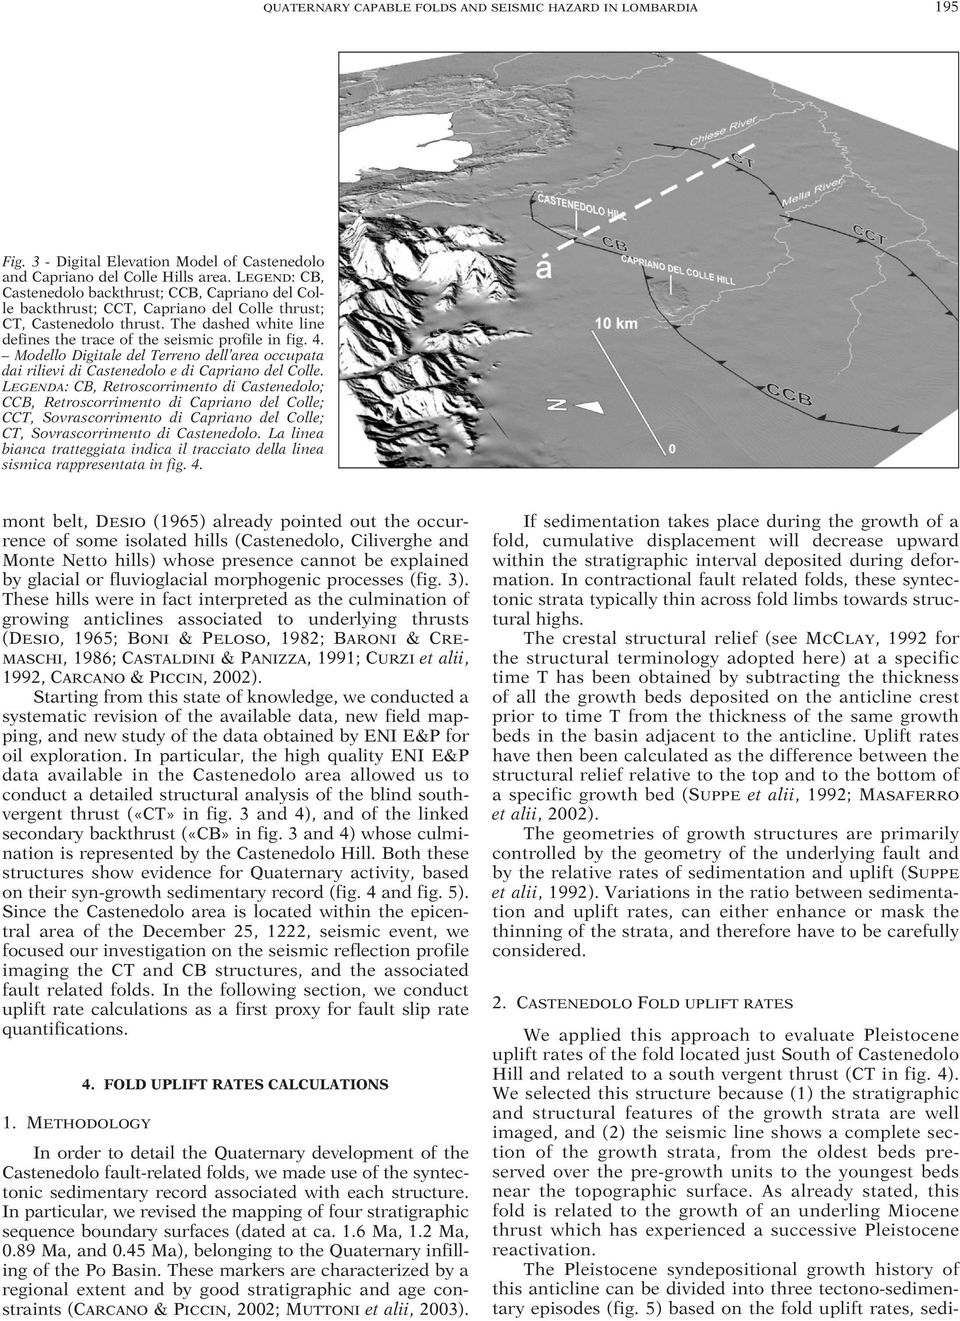 4. Modello Digitale del Terreno dell area occupata dai rilievi di Castenedolo e di Capriano del Colle.